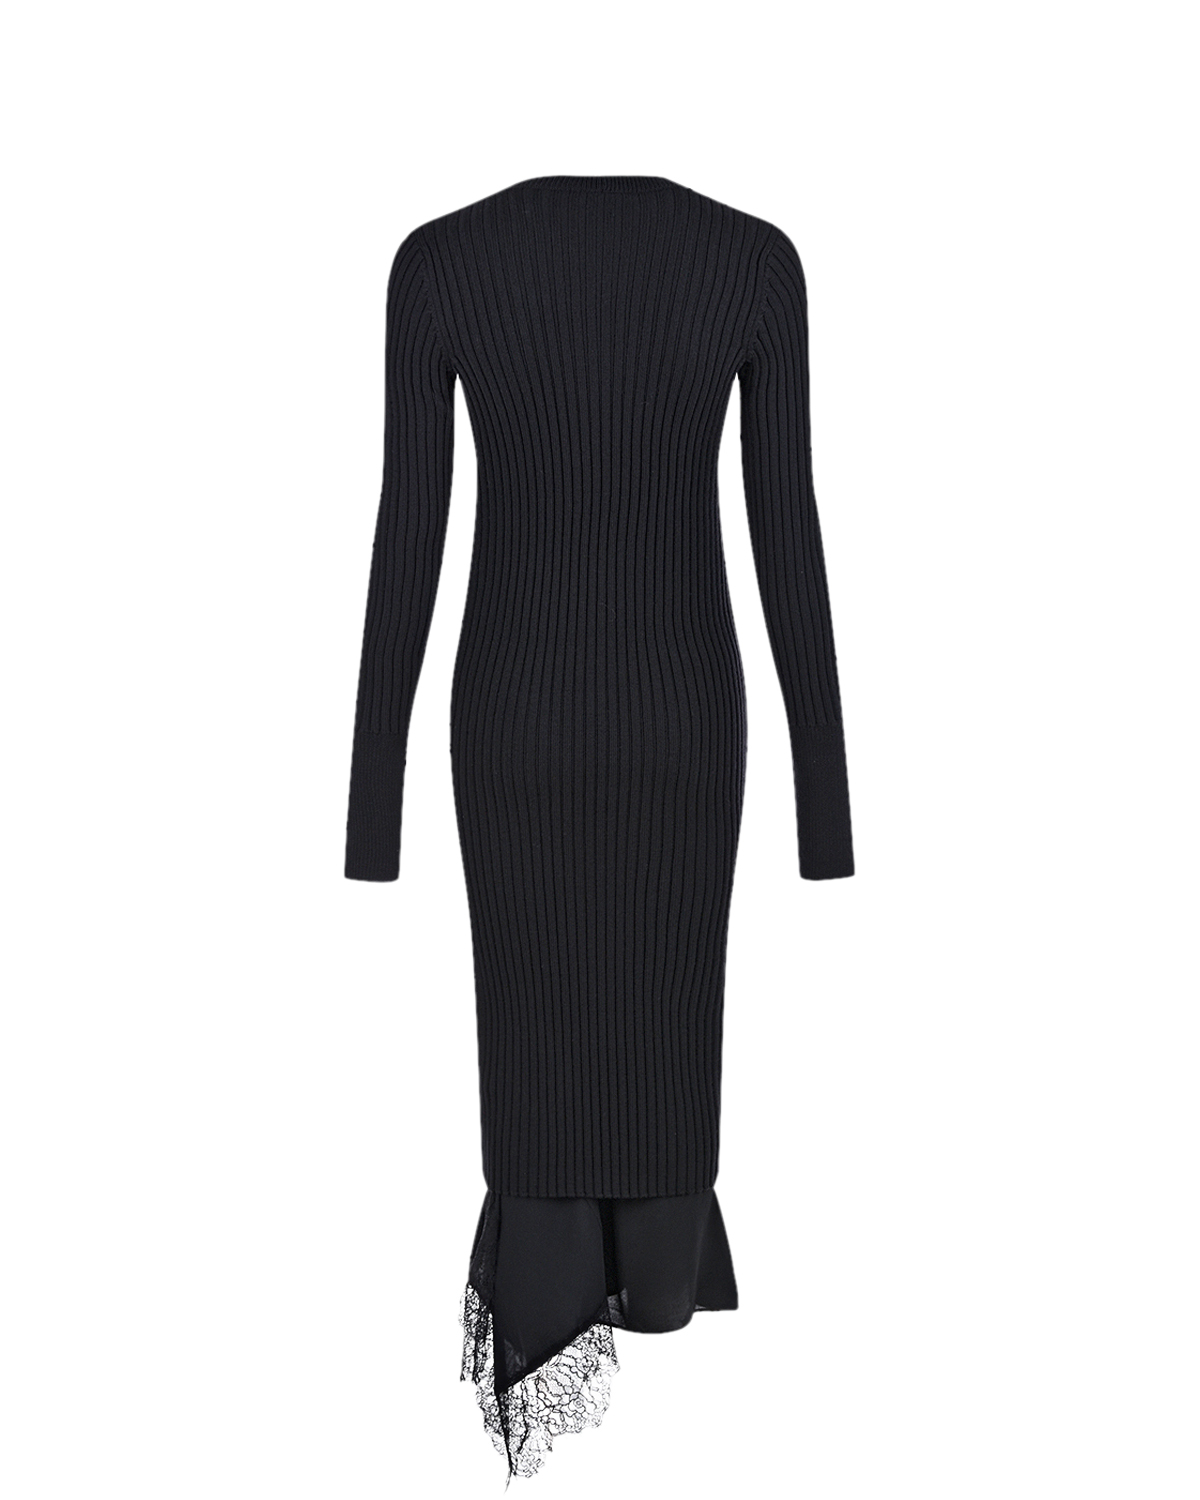 Черное платье 2 в 1 No. 21, размер 42, цвет черный - фото 5